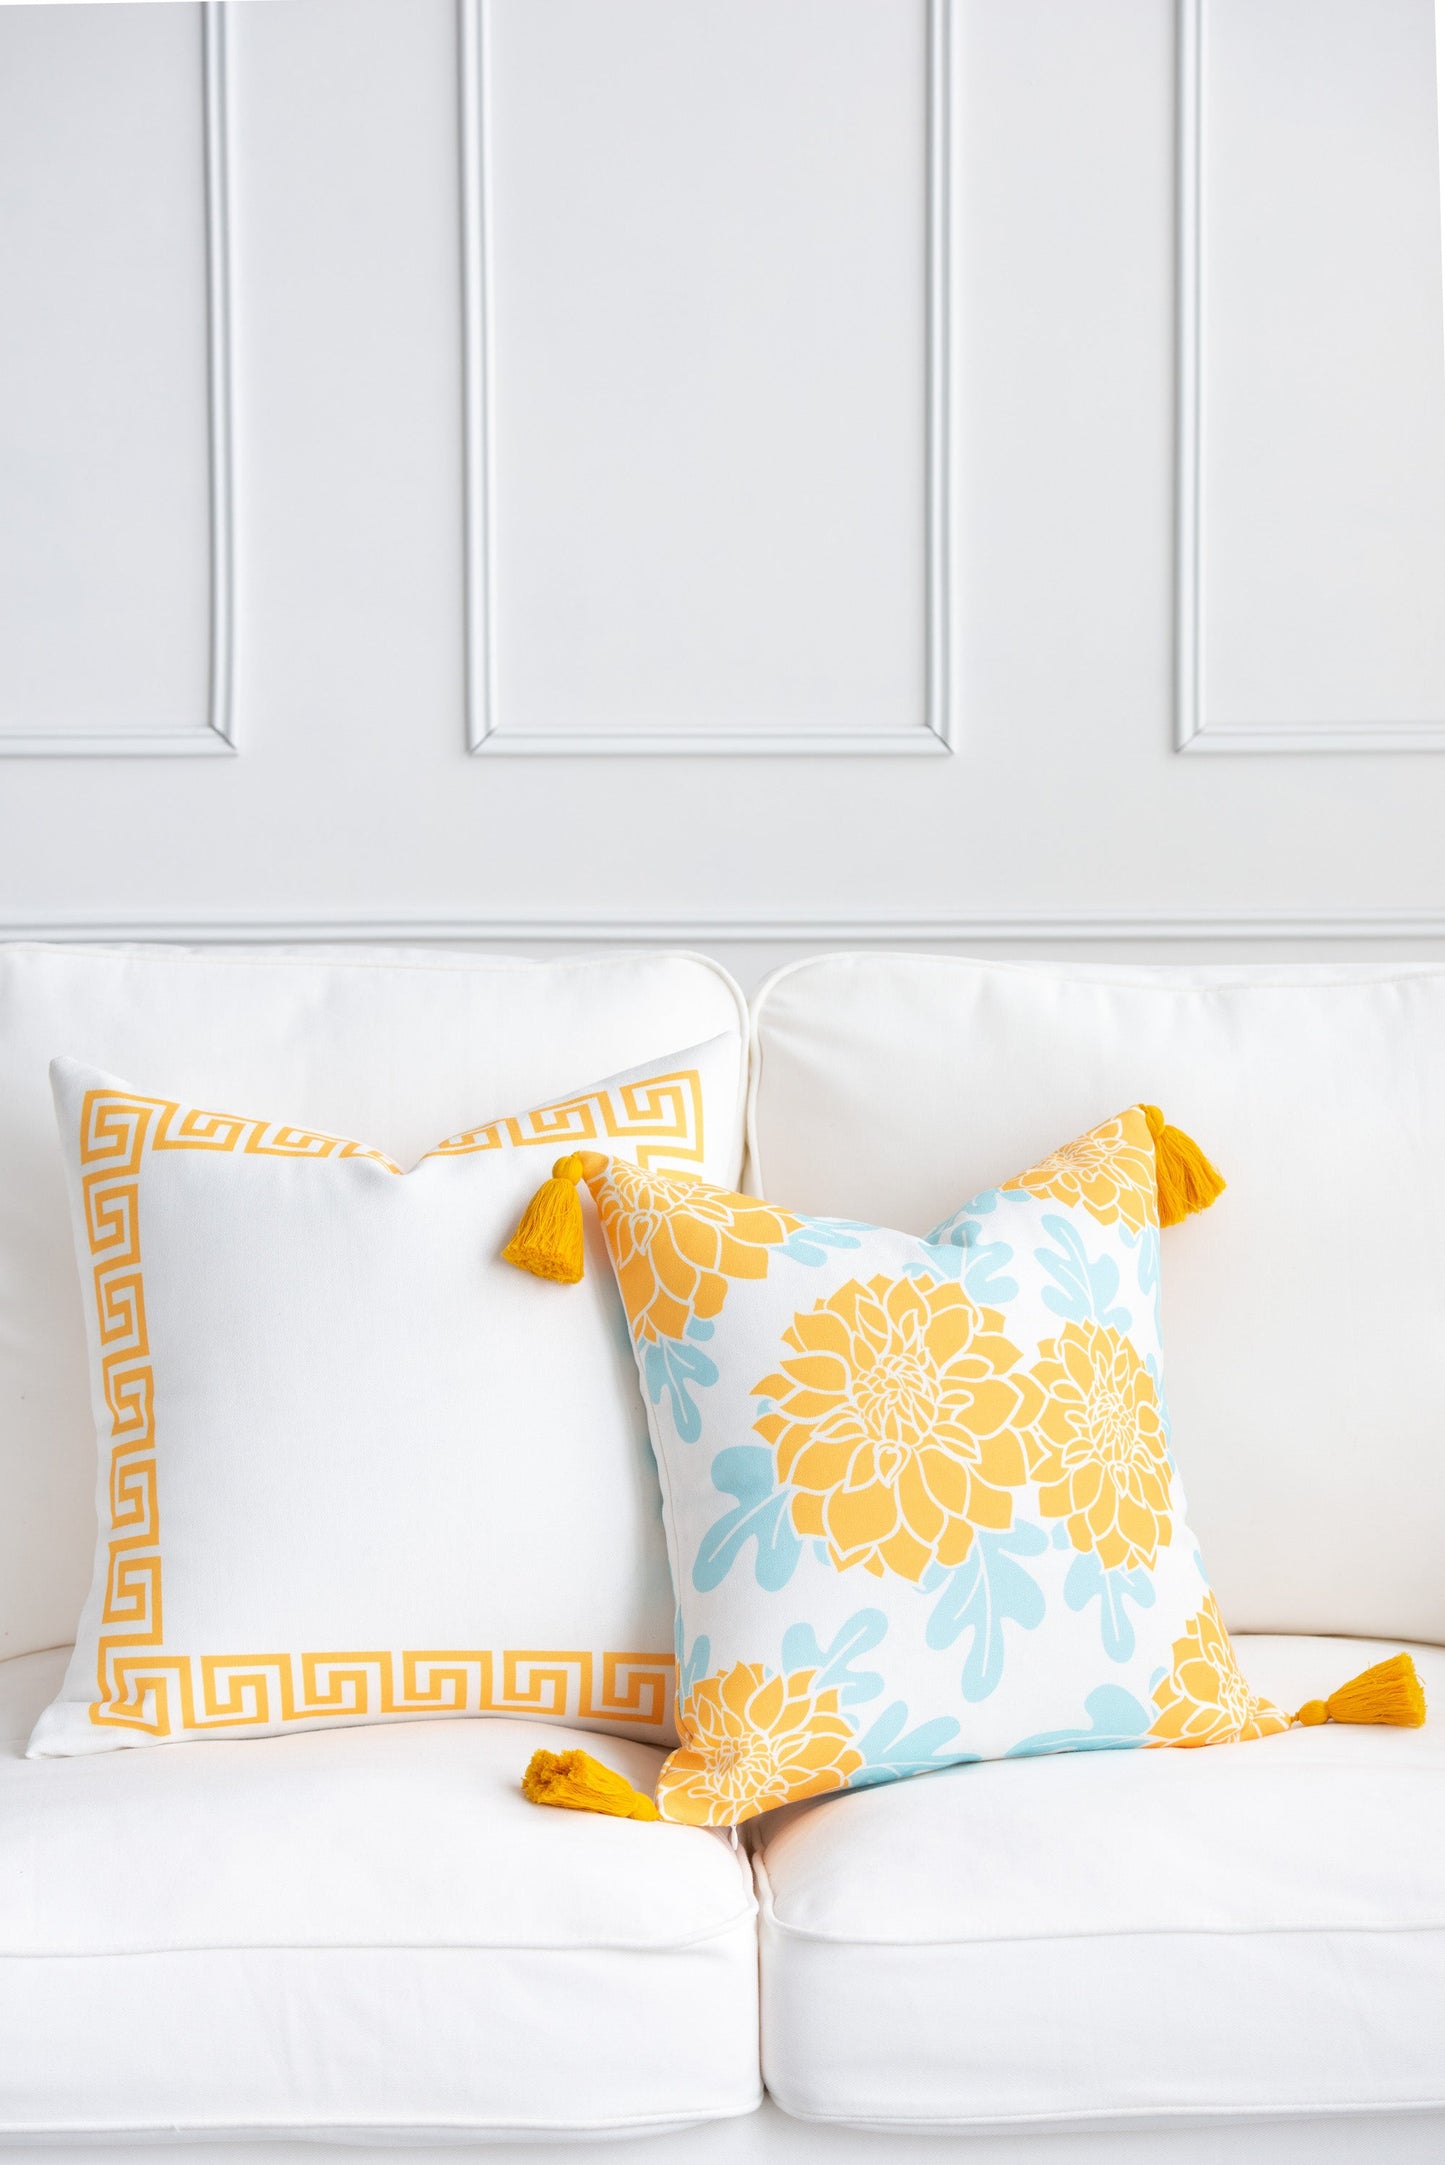 Coastal Indoor Outdoor Pillow Cover, Juno, Greek Key, Yellow, 20"x20"-4